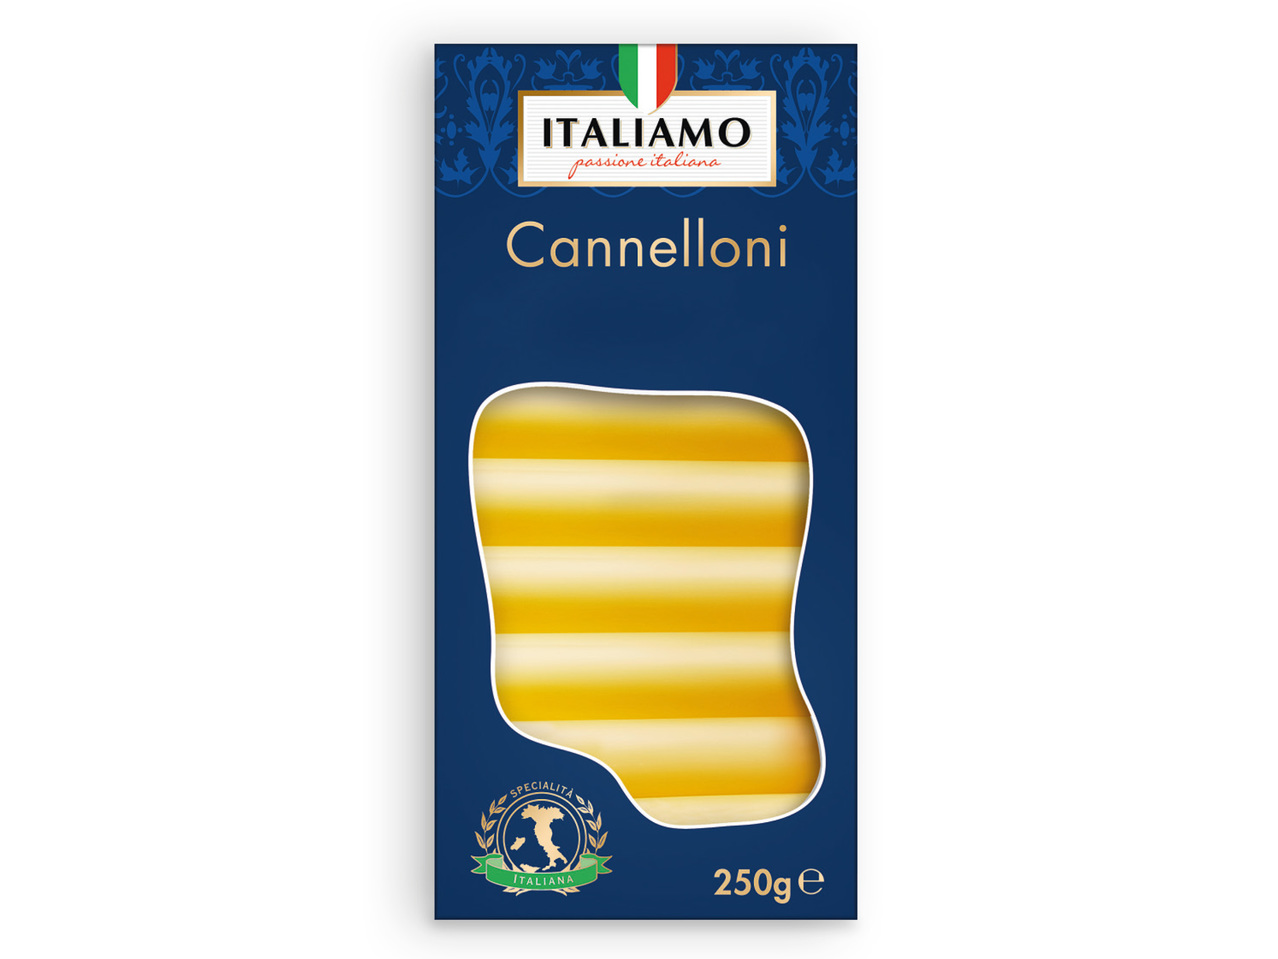 ITALIAMO(R) Cannelloni